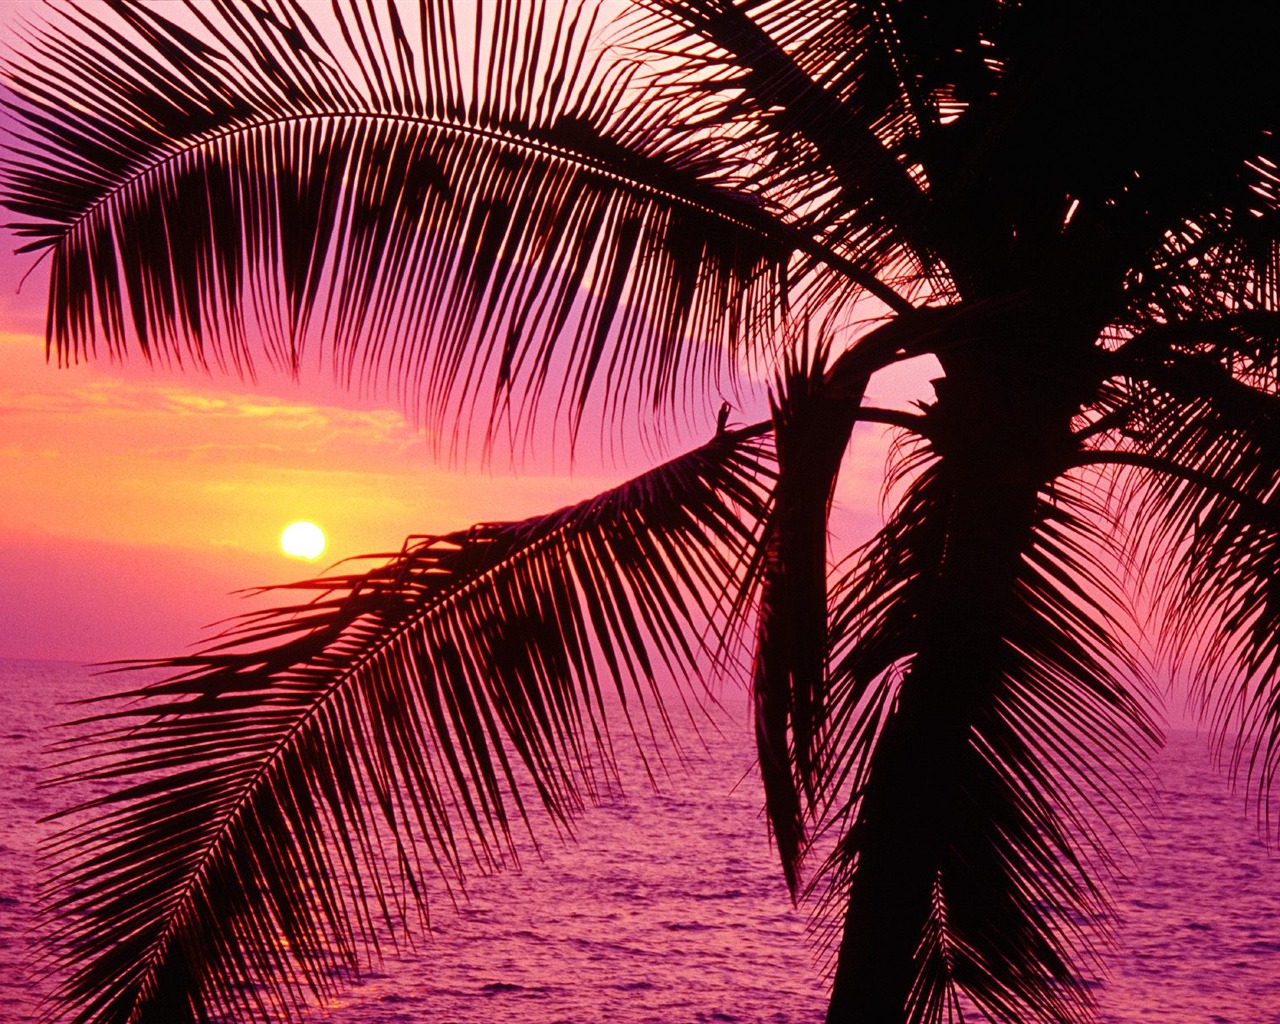 Fond d'écran Palm arbre coucher de soleil (1) #15 - 1280x1024